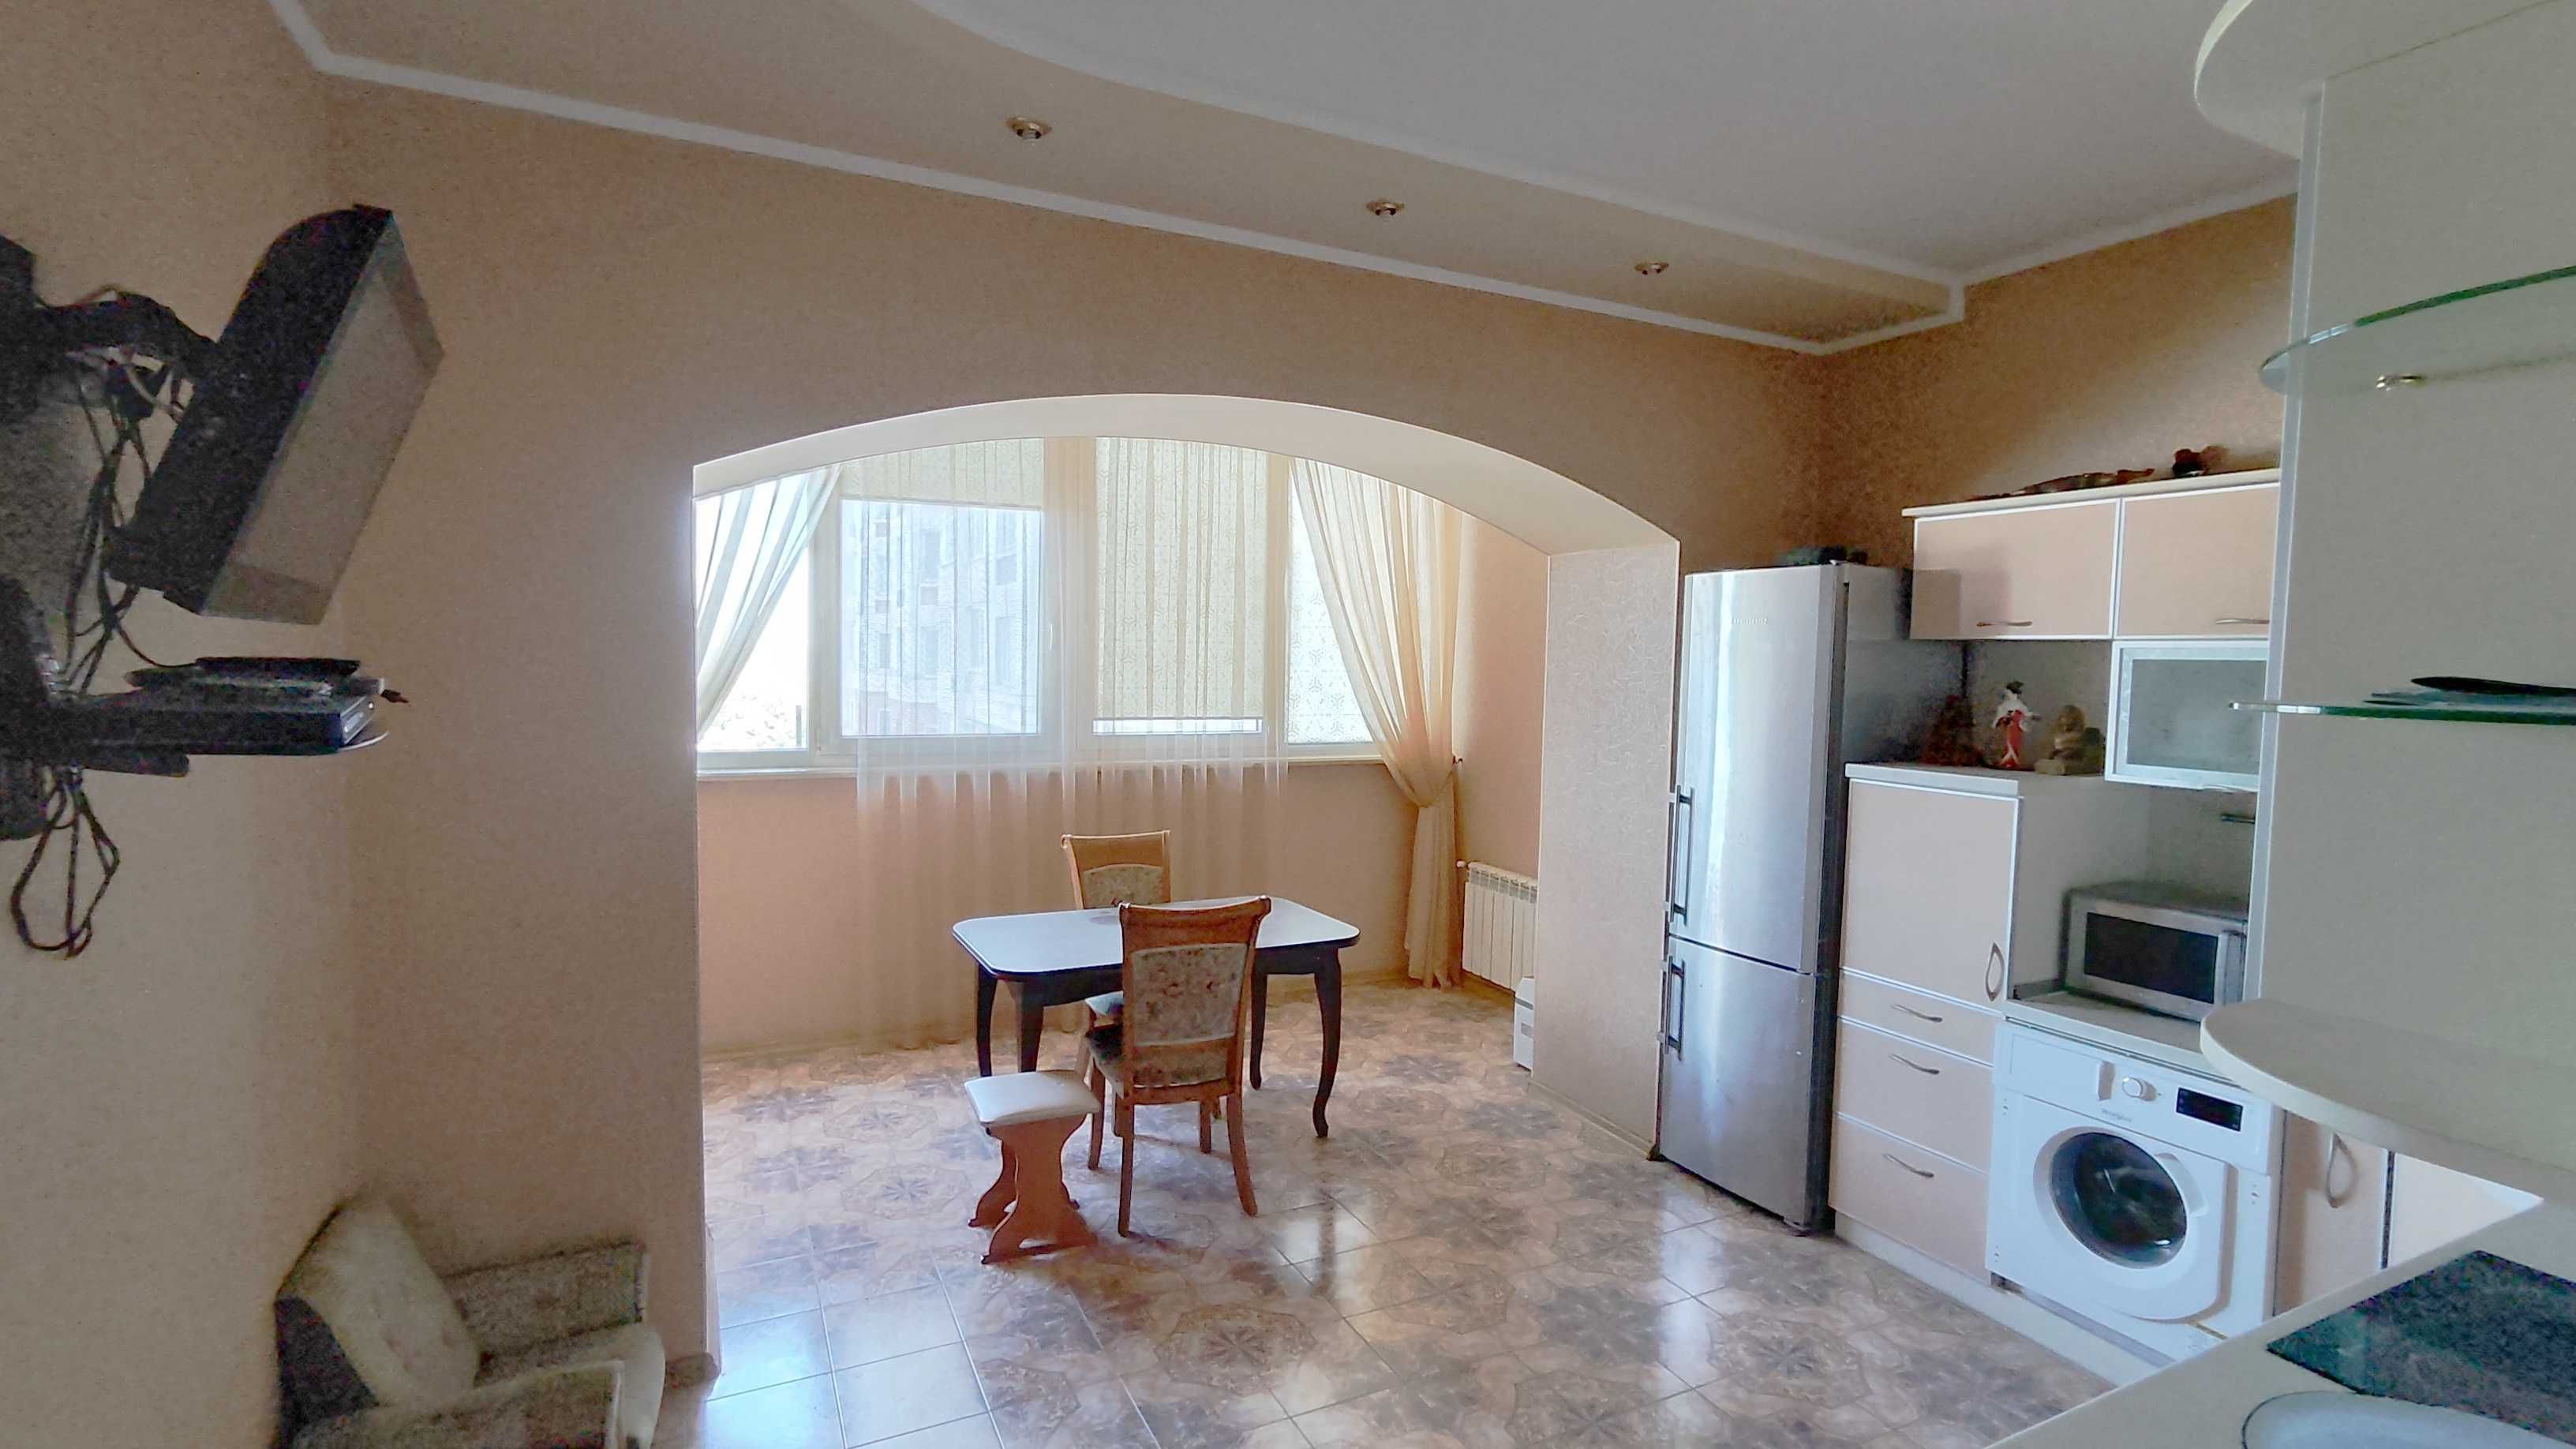 Квартира в новострое г. Черноморск, лучшее место и качество.